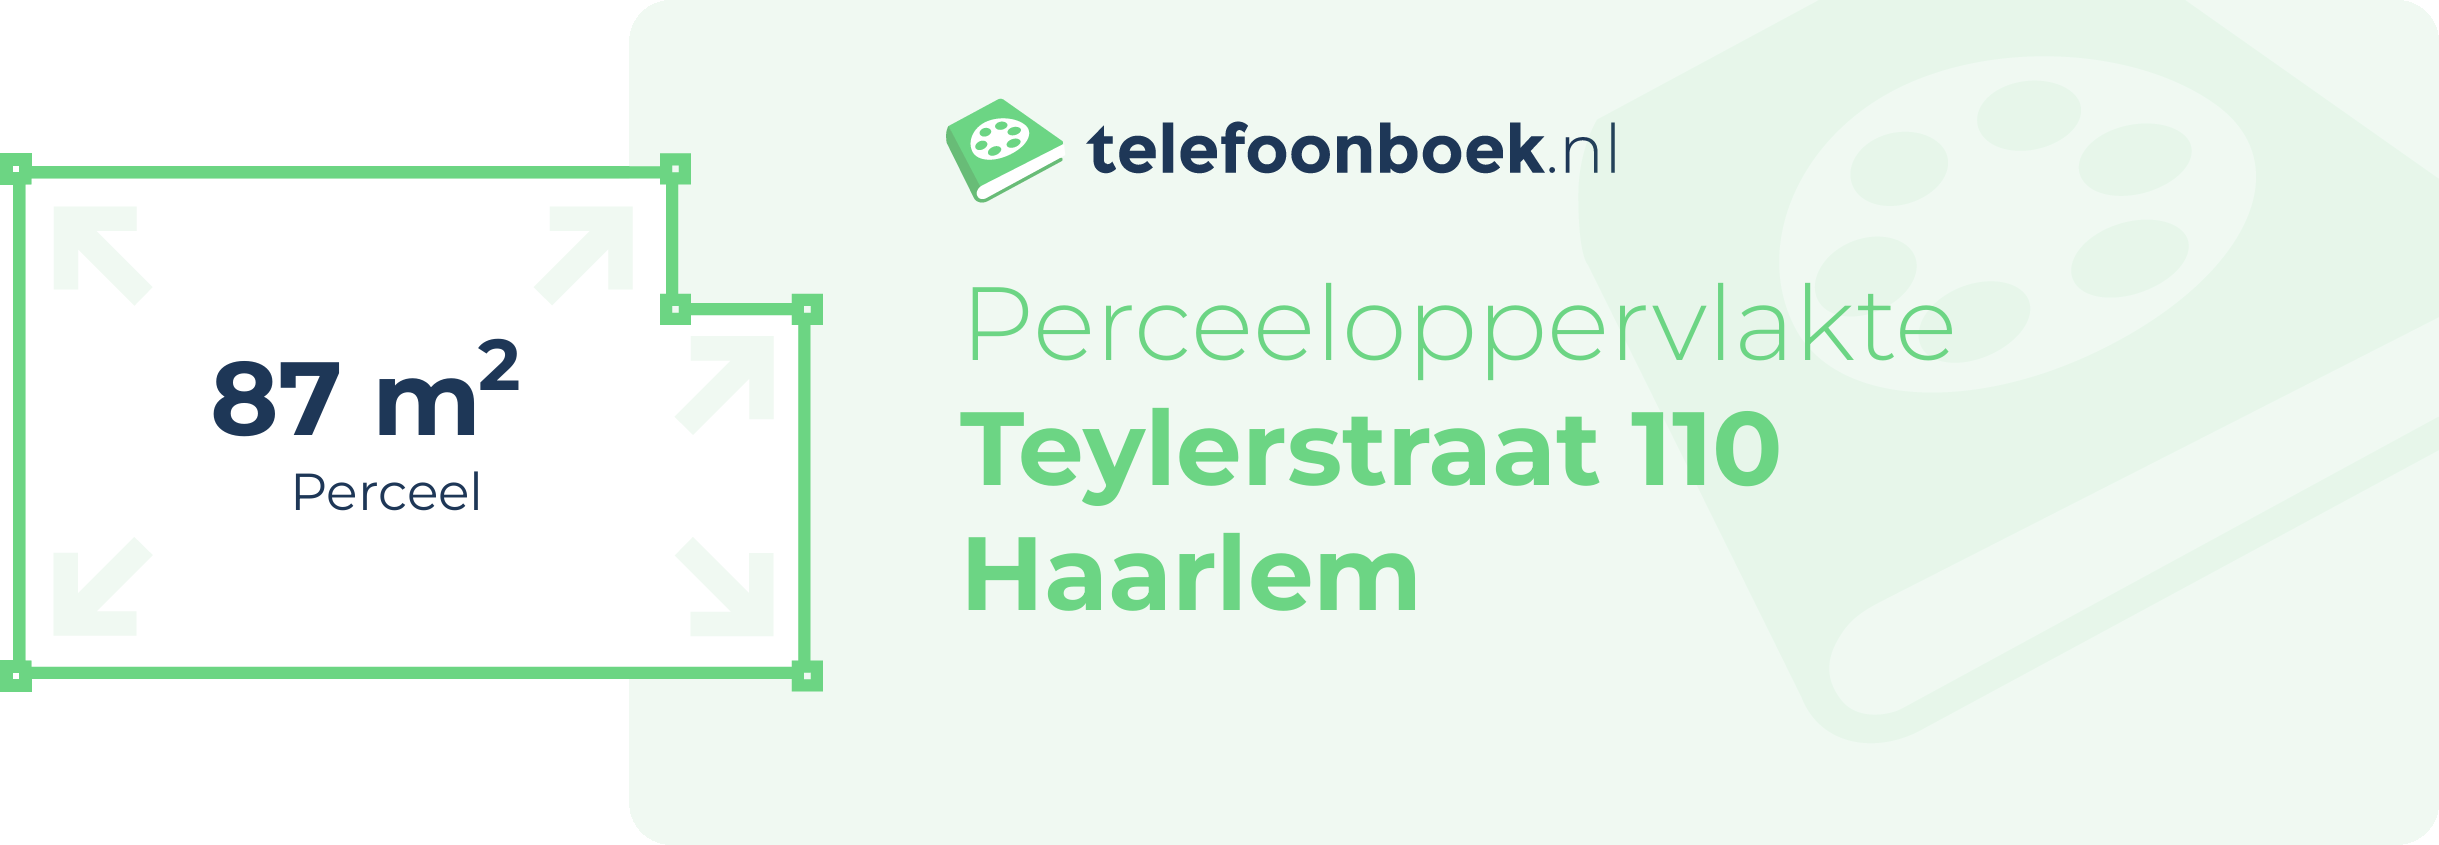 Perceeloppervlakte Teylerstraat 110 Haarlem